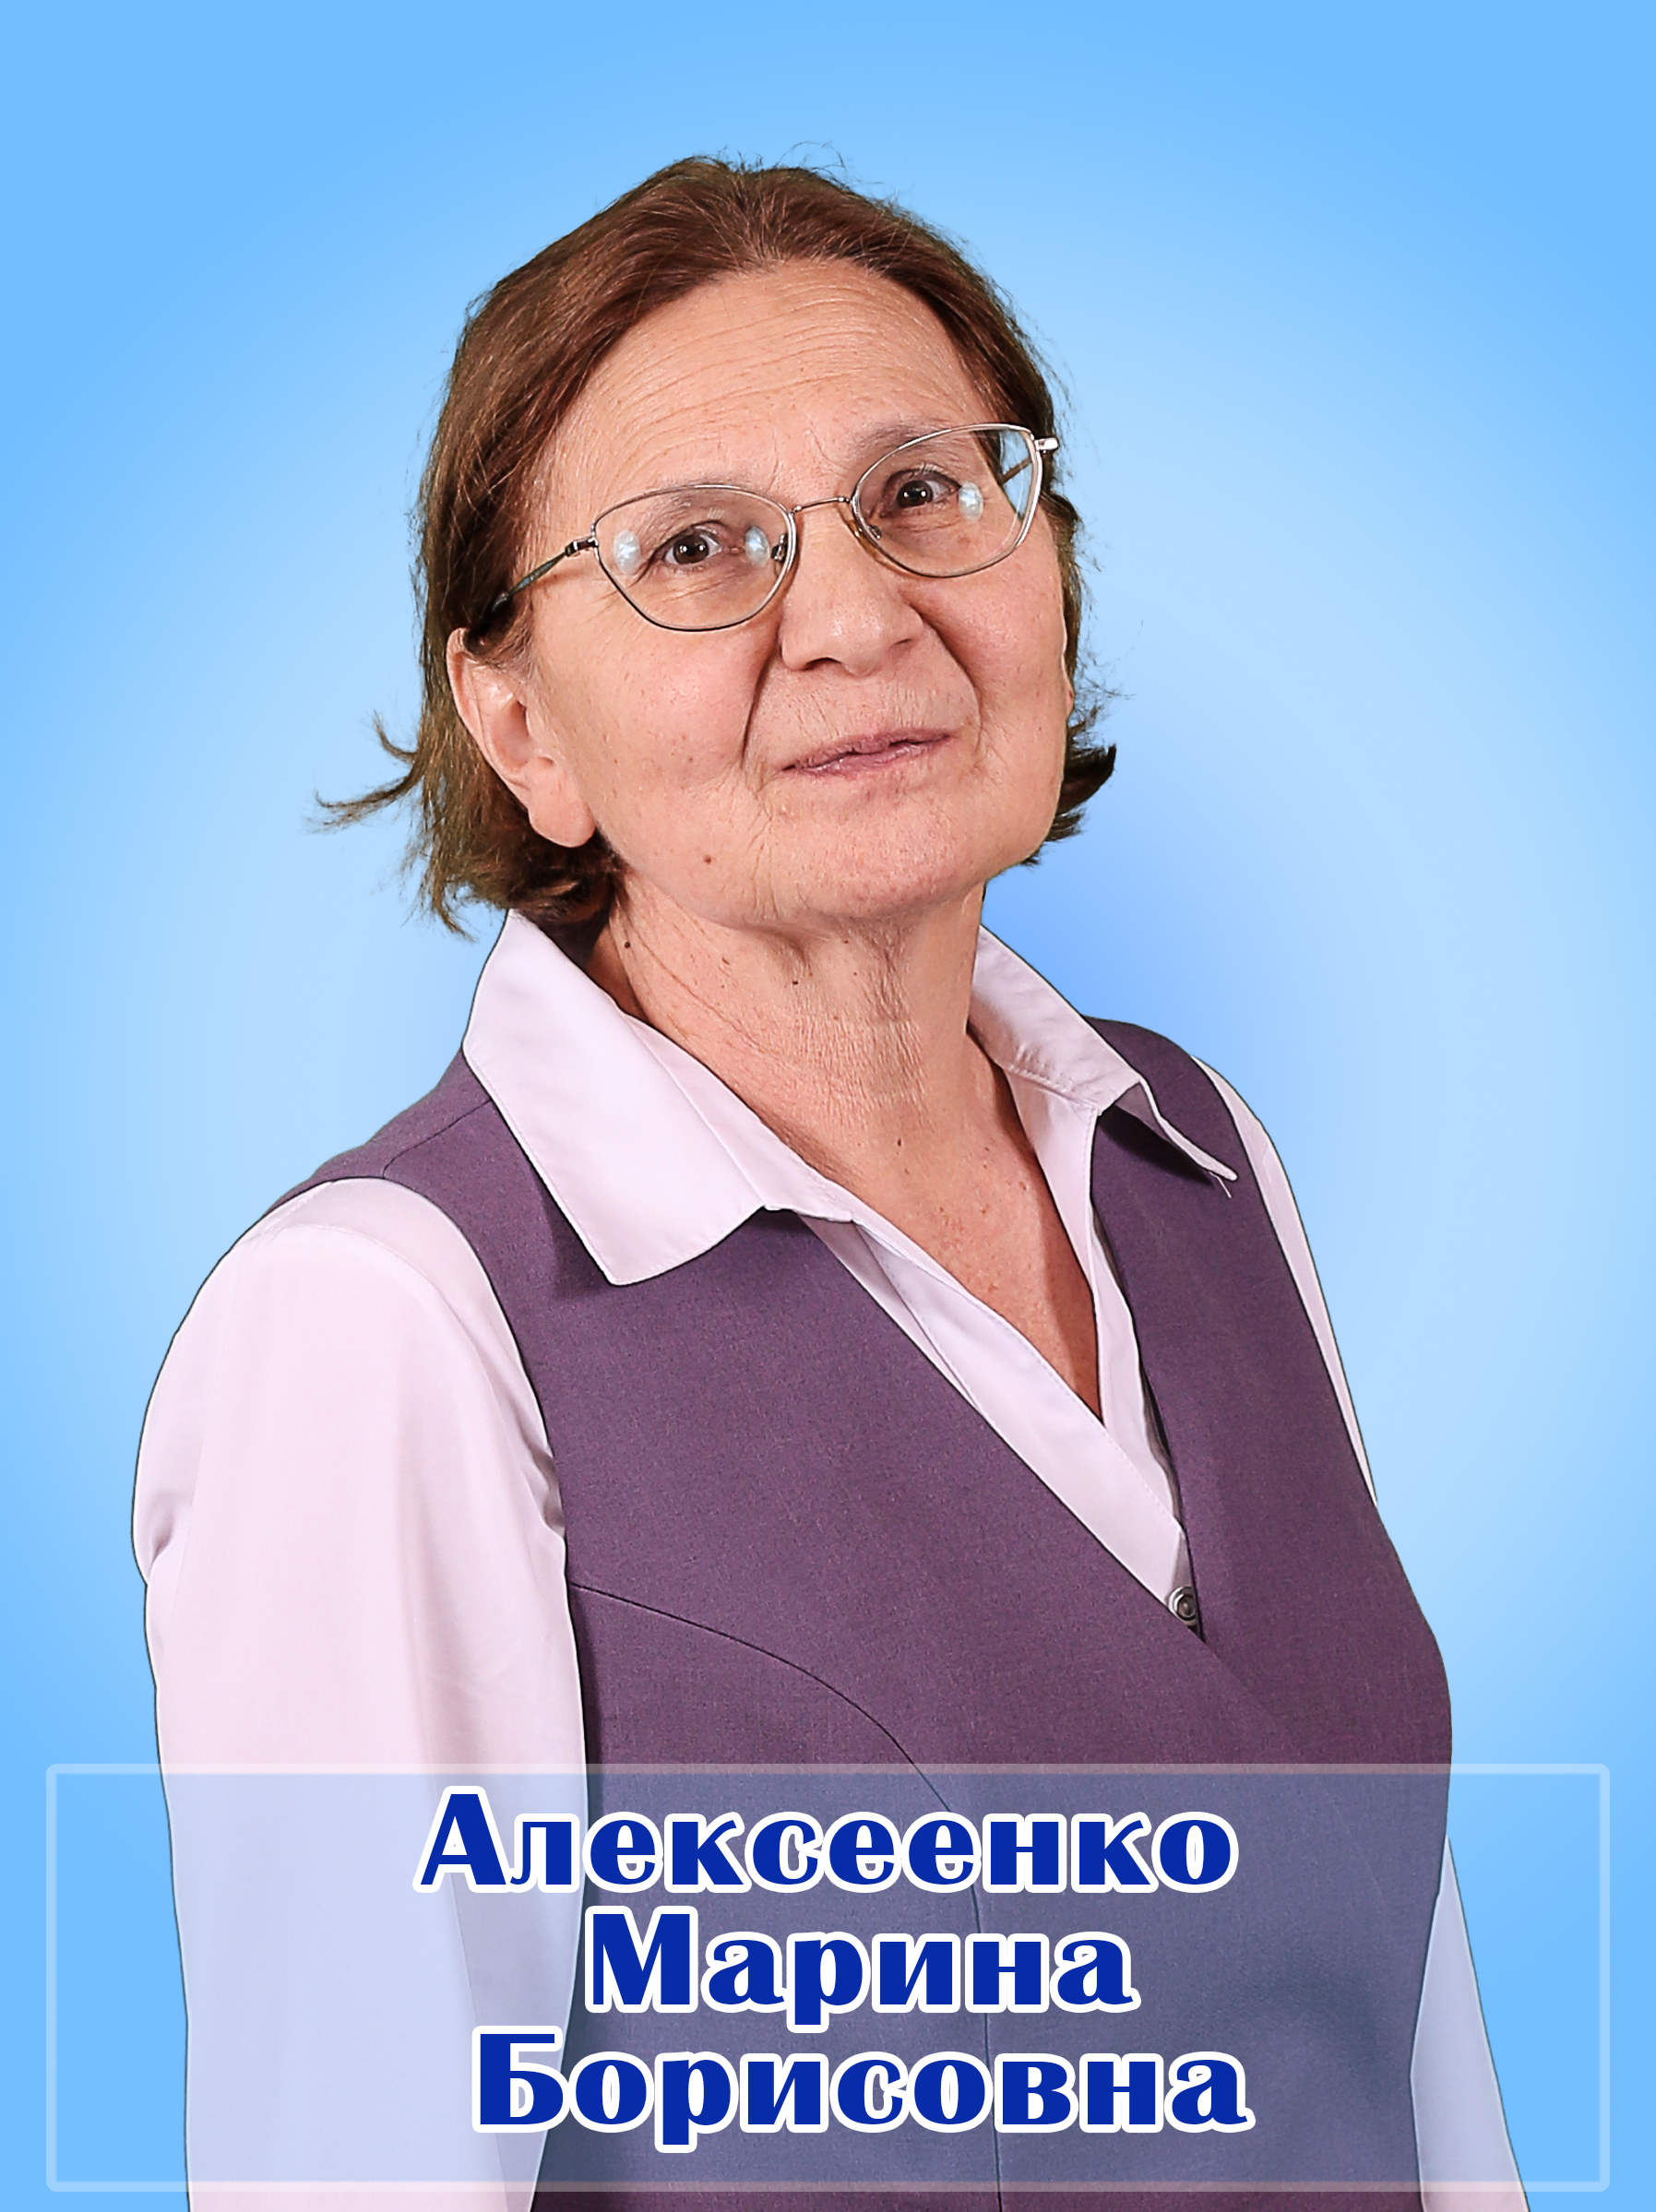 Алексеенко Марина Борисовна.